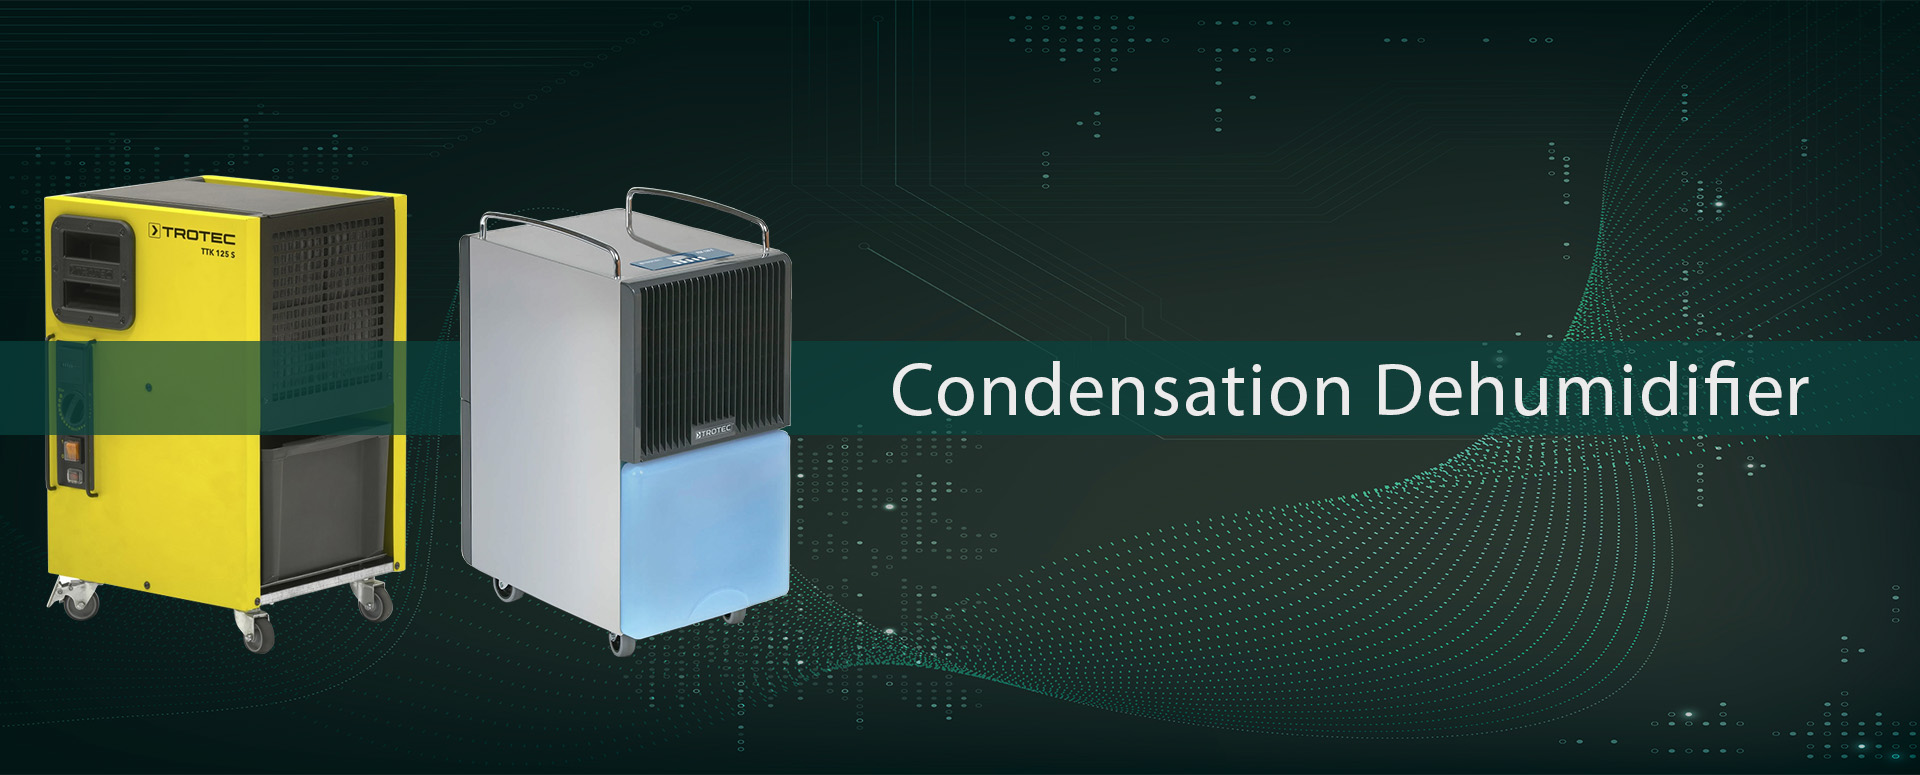 Condensation Dehumidifier